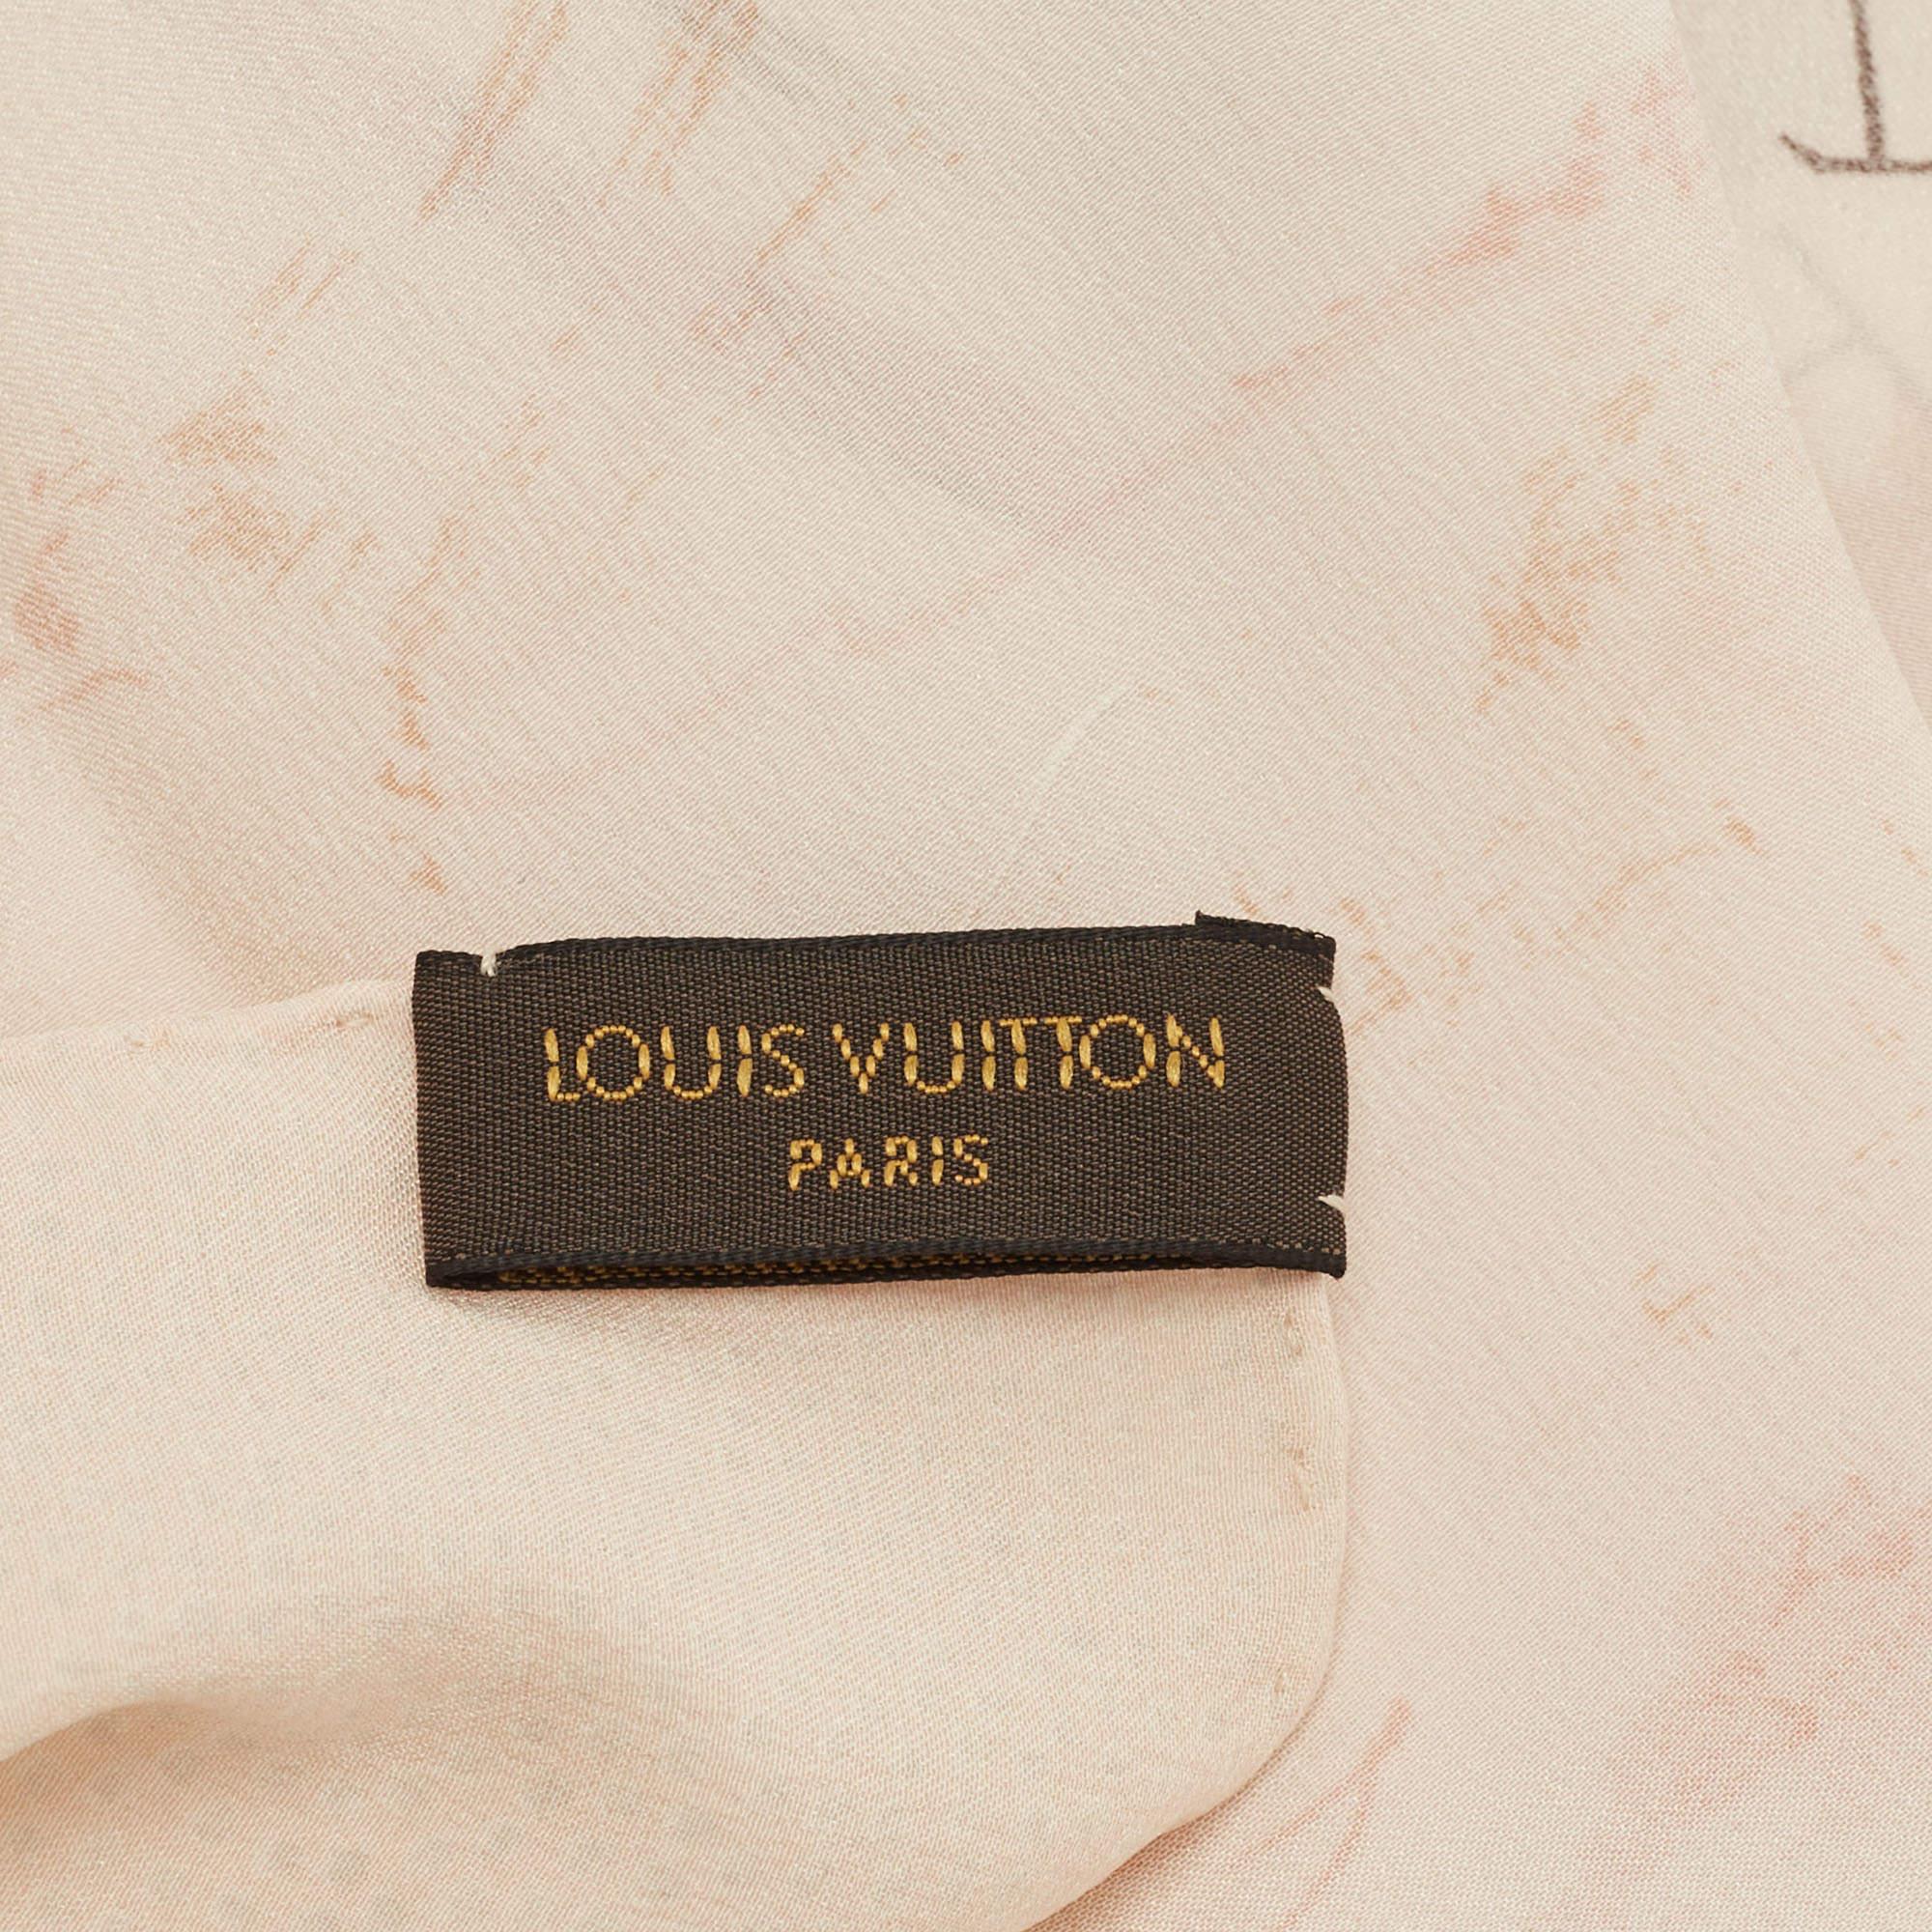 Ob über einem Abendoutfit oder einem schicken Freizeitoutfit, Louis Vuitton sorgt mit diesem wunderschönen Schal für das gewisse Extra an Stil. Die Kreation ist aus Seide gefertigt und besticht durch ihre bedruckten Partien.

